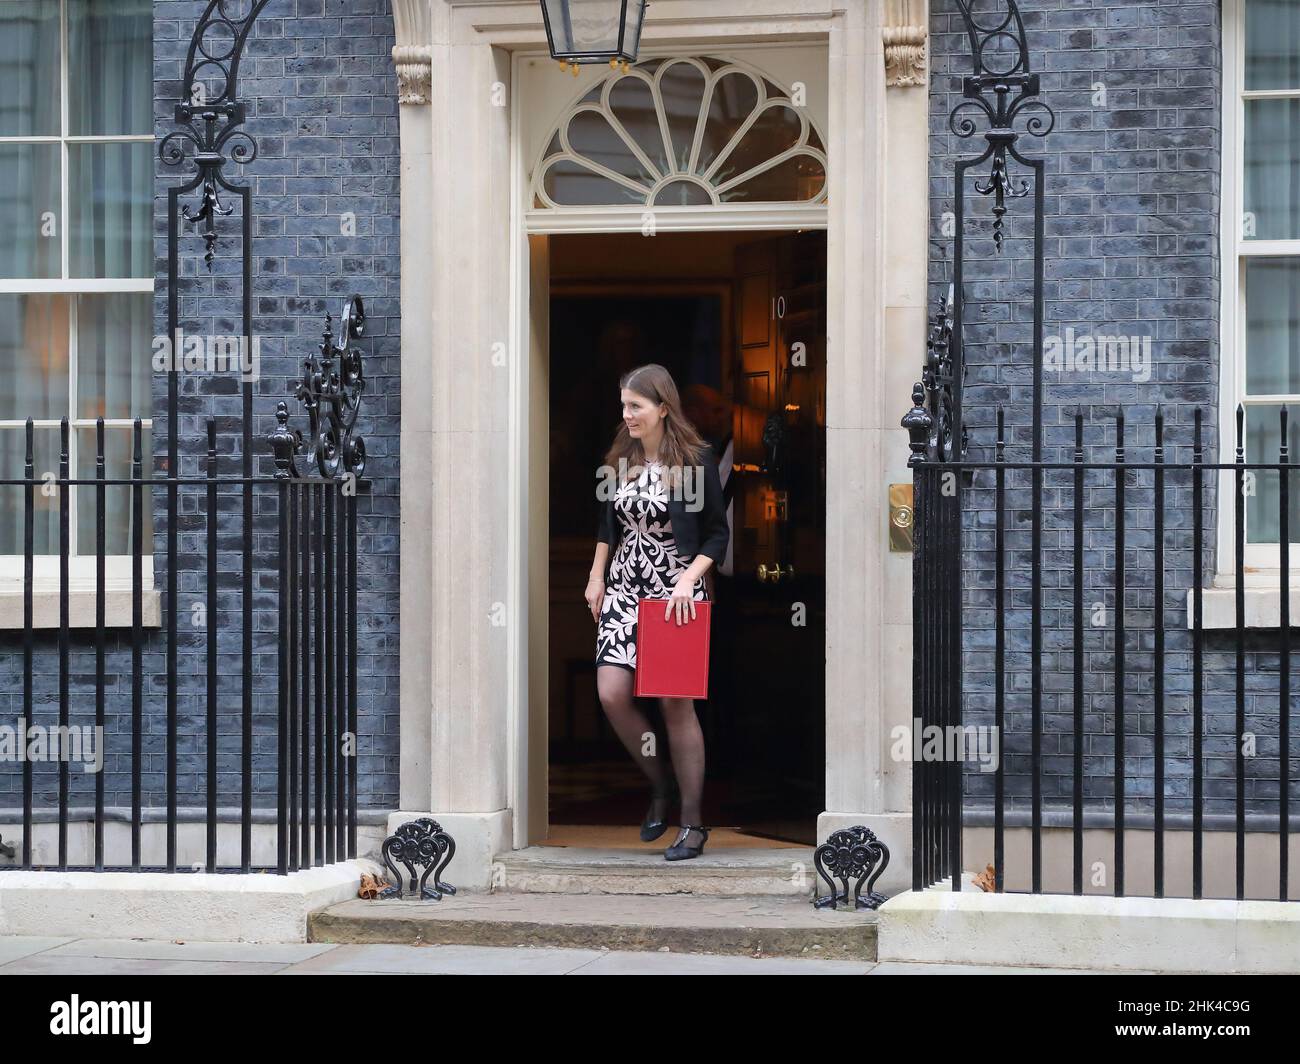 Londres, Royaume-Uni, 1st février 2022.Ministre d'État à l'enseignement supérieur et à l'enseignement supérieur Michelle Donelan quittant le 10 Downing Street. Banque D'Images